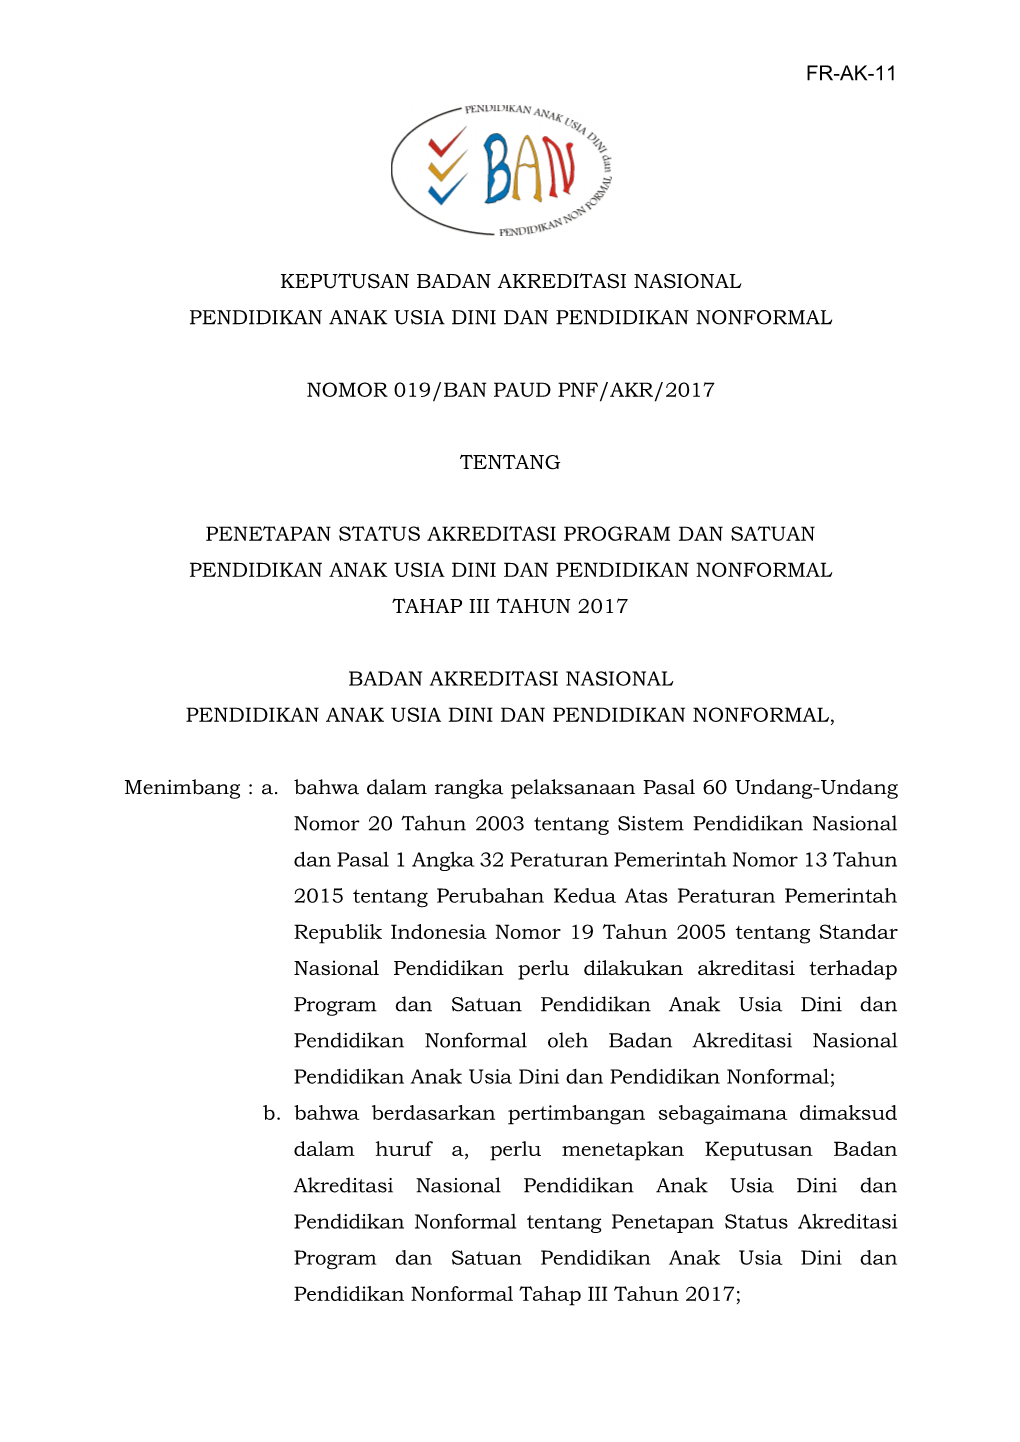 Fr-Ak-11 Keputusan Badan Akreditasi Nasional